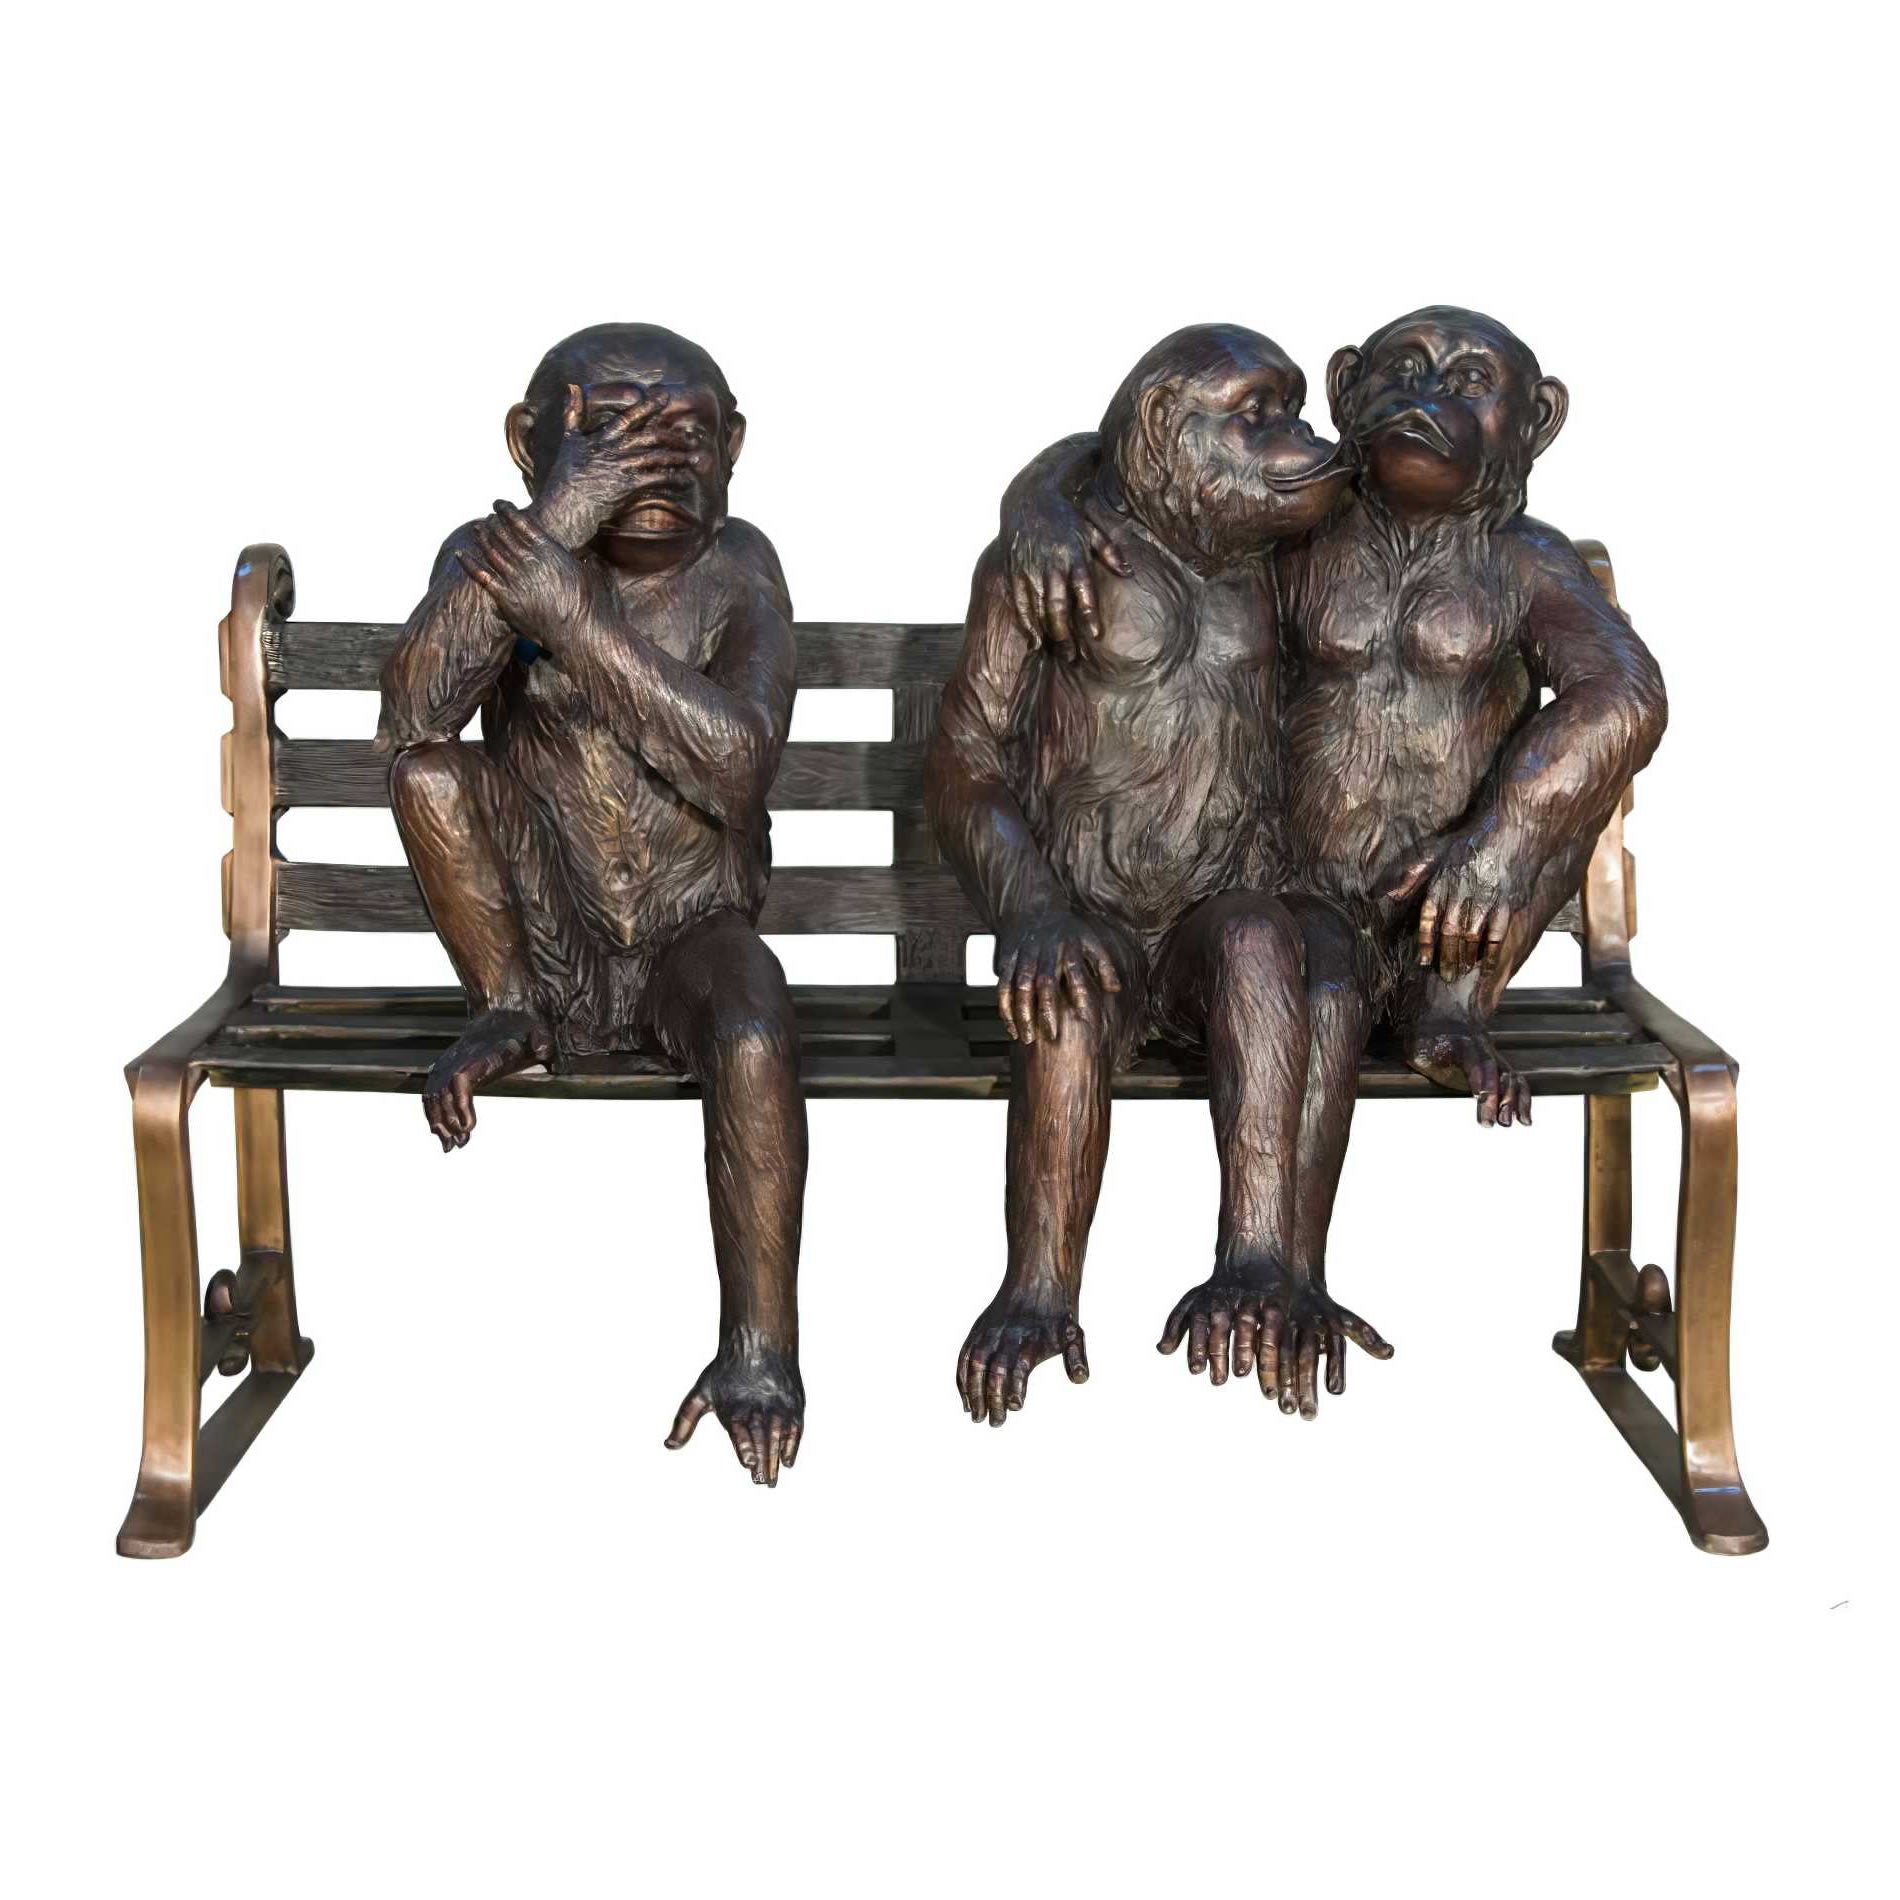 Three Monkeys Sitting on Bench- Bronze Sculpture